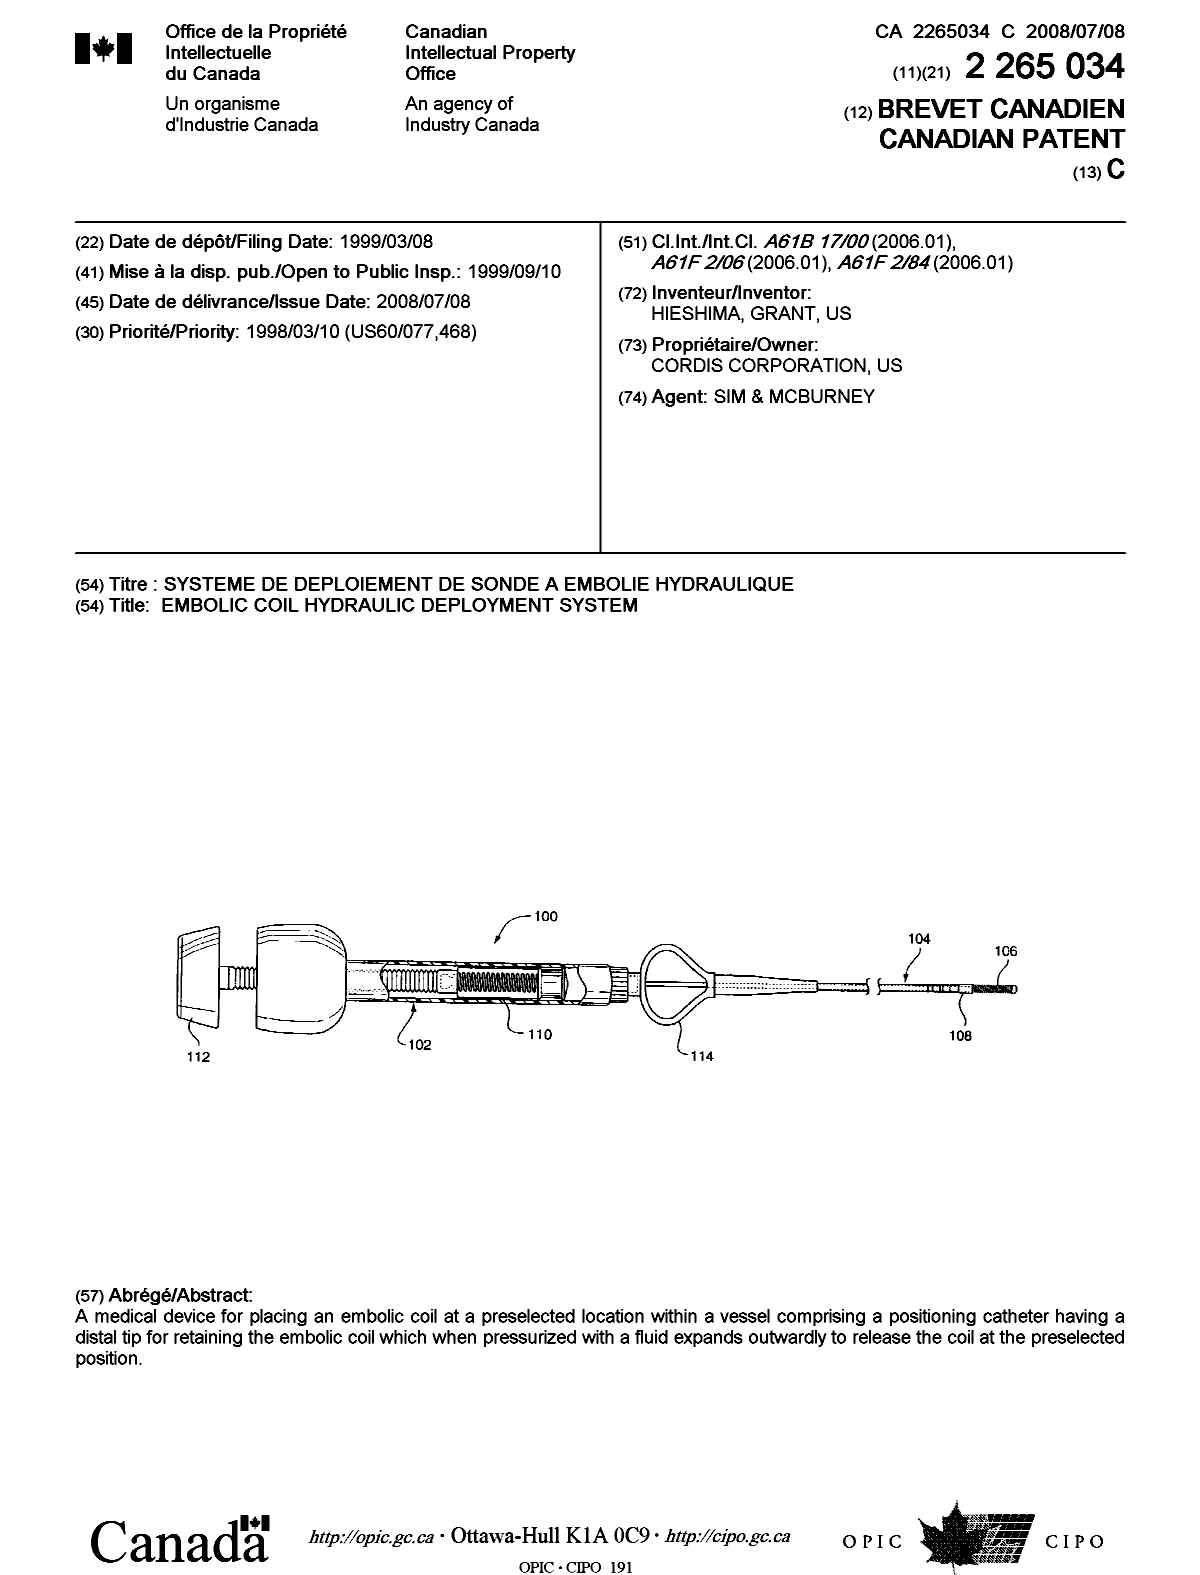 Document de brevet canadien 2265034. Page couverture 20080605. Image 1 de 1